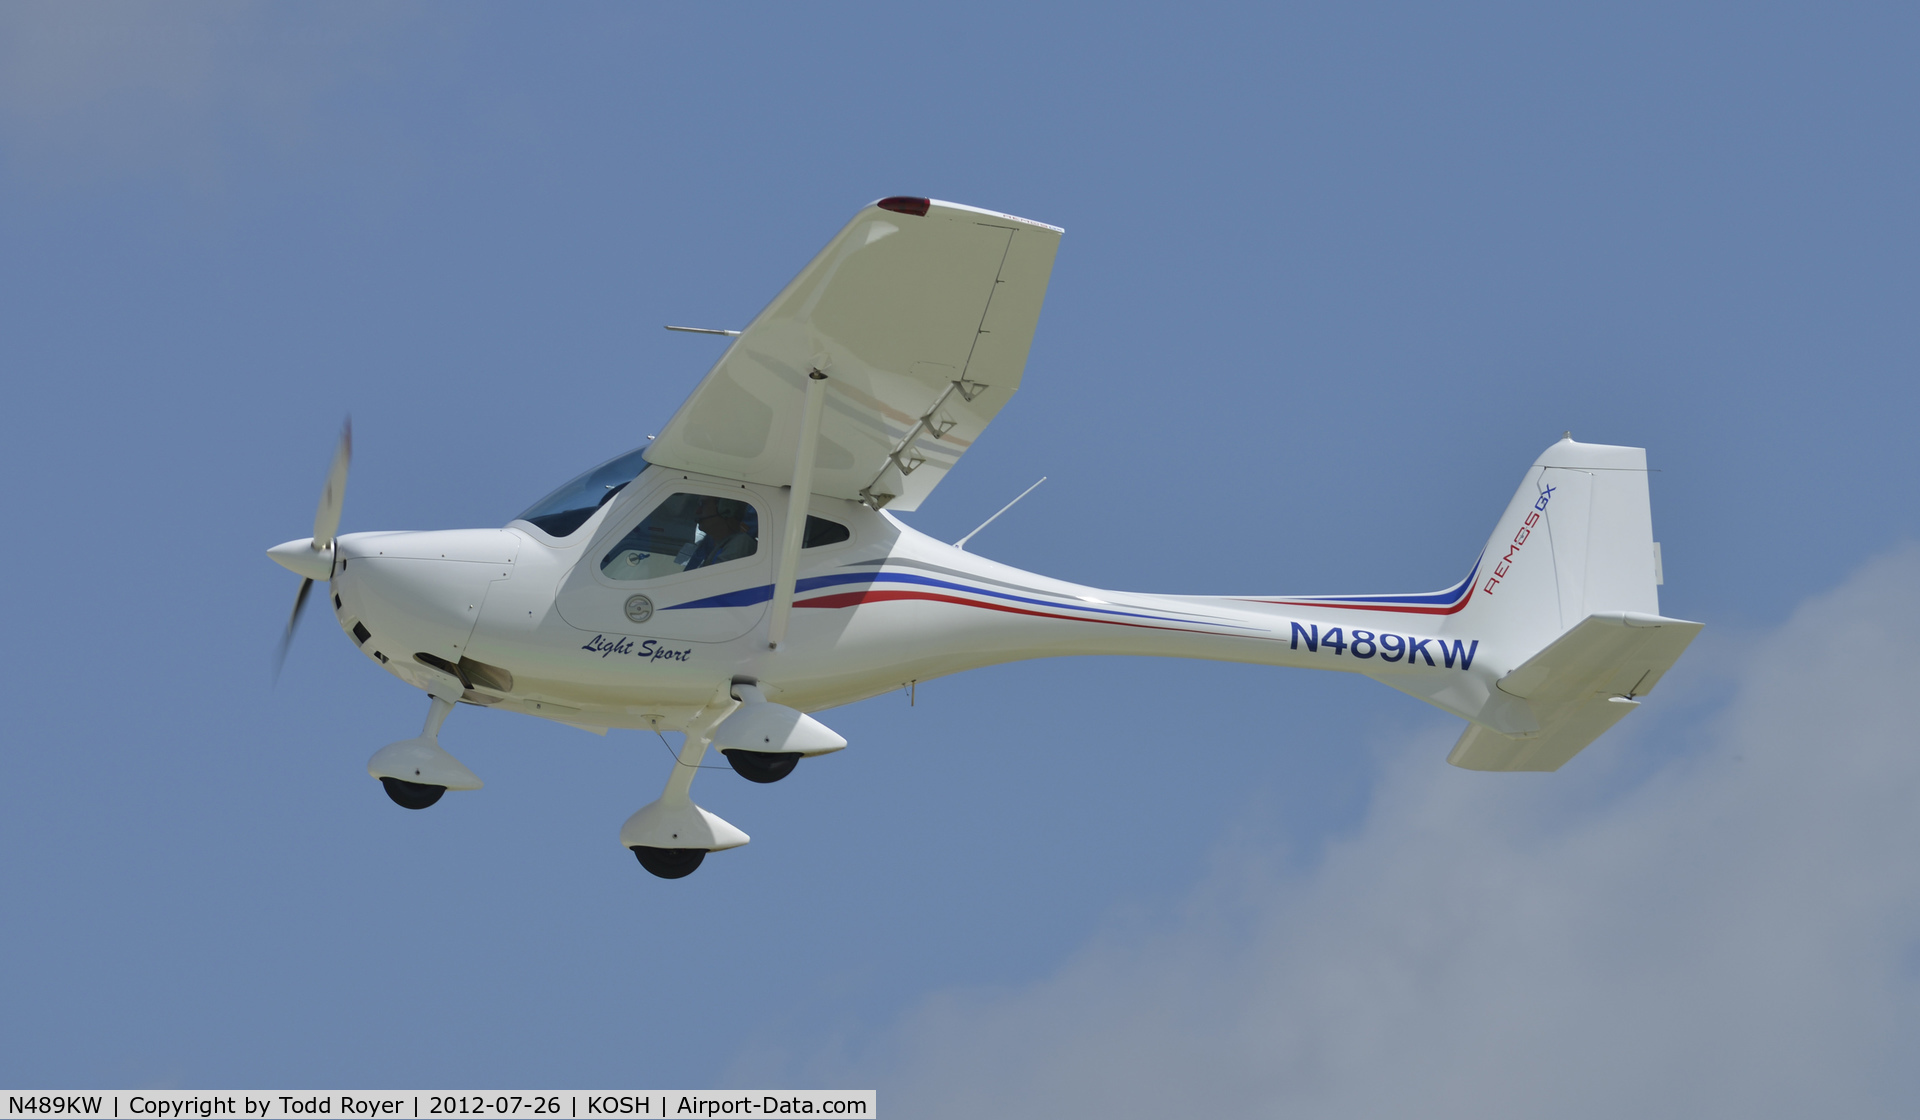 N489KW, 2008 Remos GX C/N 283, Departing Airventure 2012